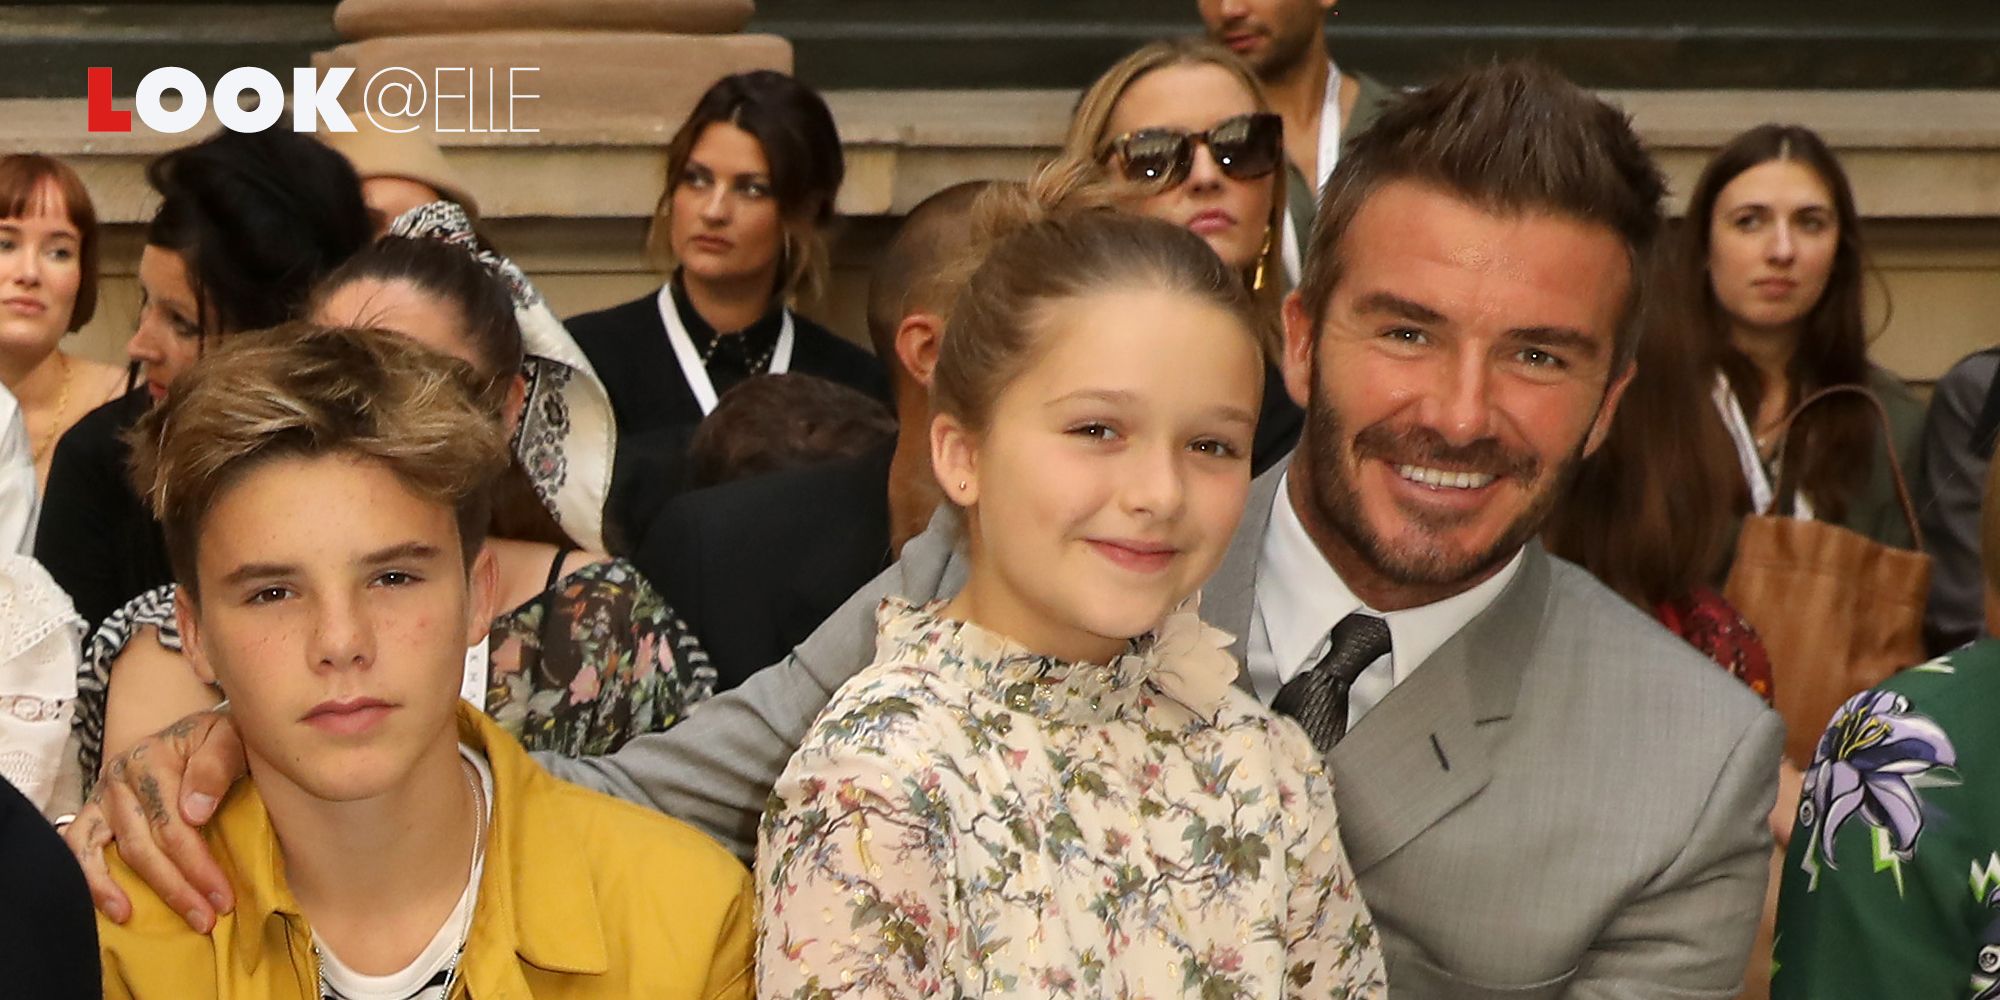 Vestito moda 2019: il vestito a fiori di Harper Beckham è tendenza Autunno Inverno 2019 2020